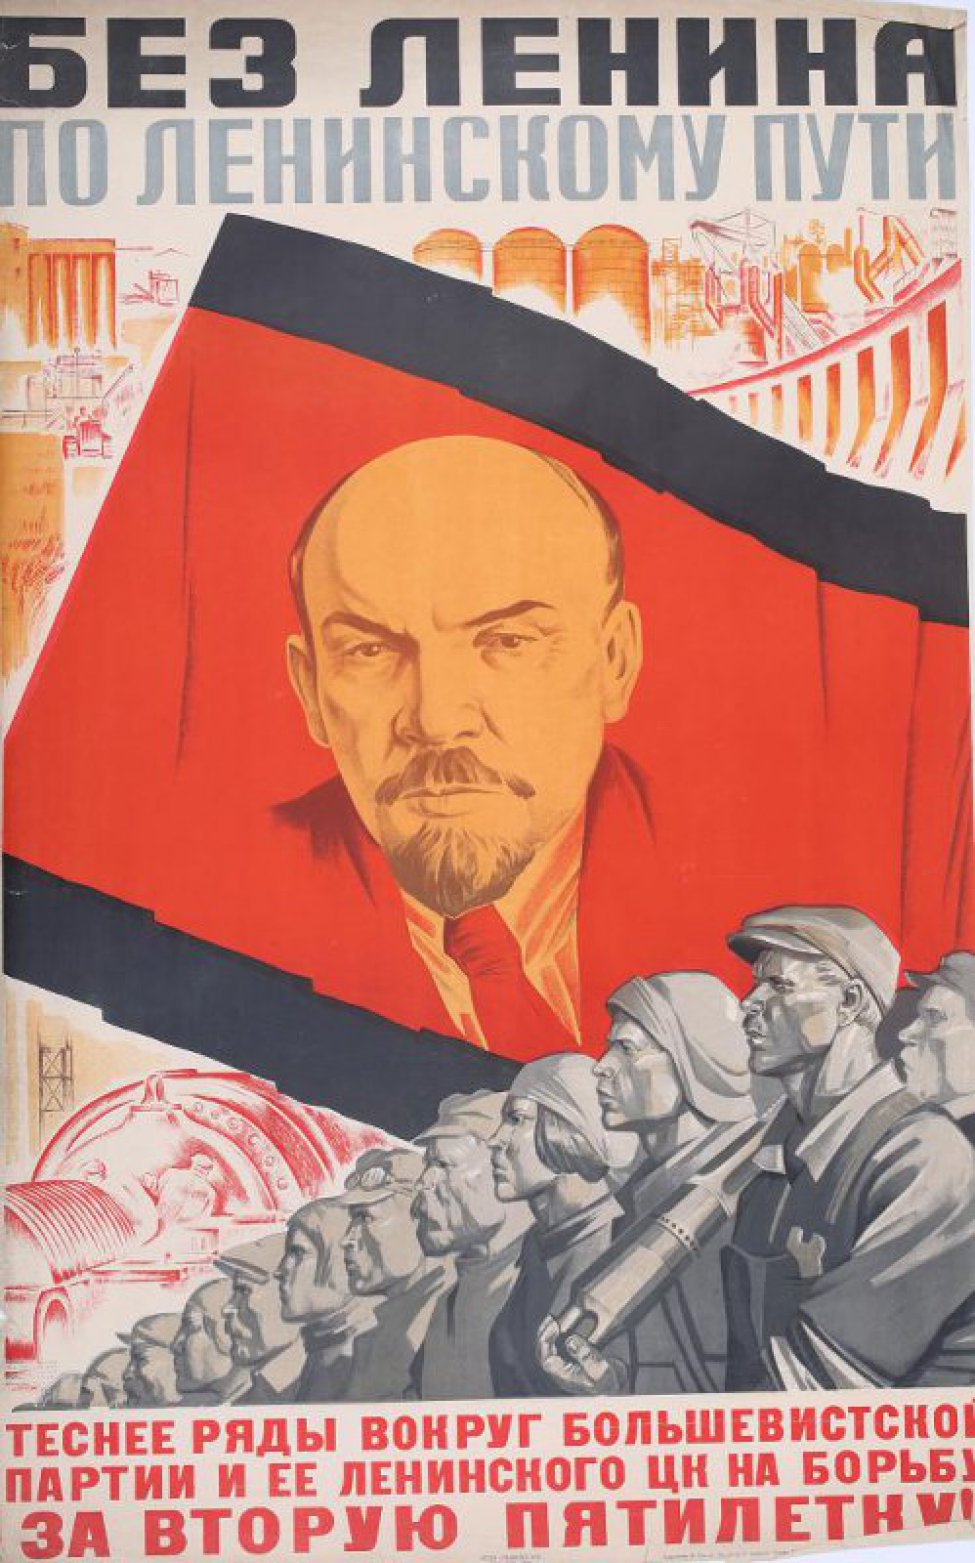 Изображено траурное знамя с портретом т.Ленина. Справа и слева индустриальные сооружения. Внизу рабочие: мужчины и женщины. Ниже текст:" Теснее пятилетку".